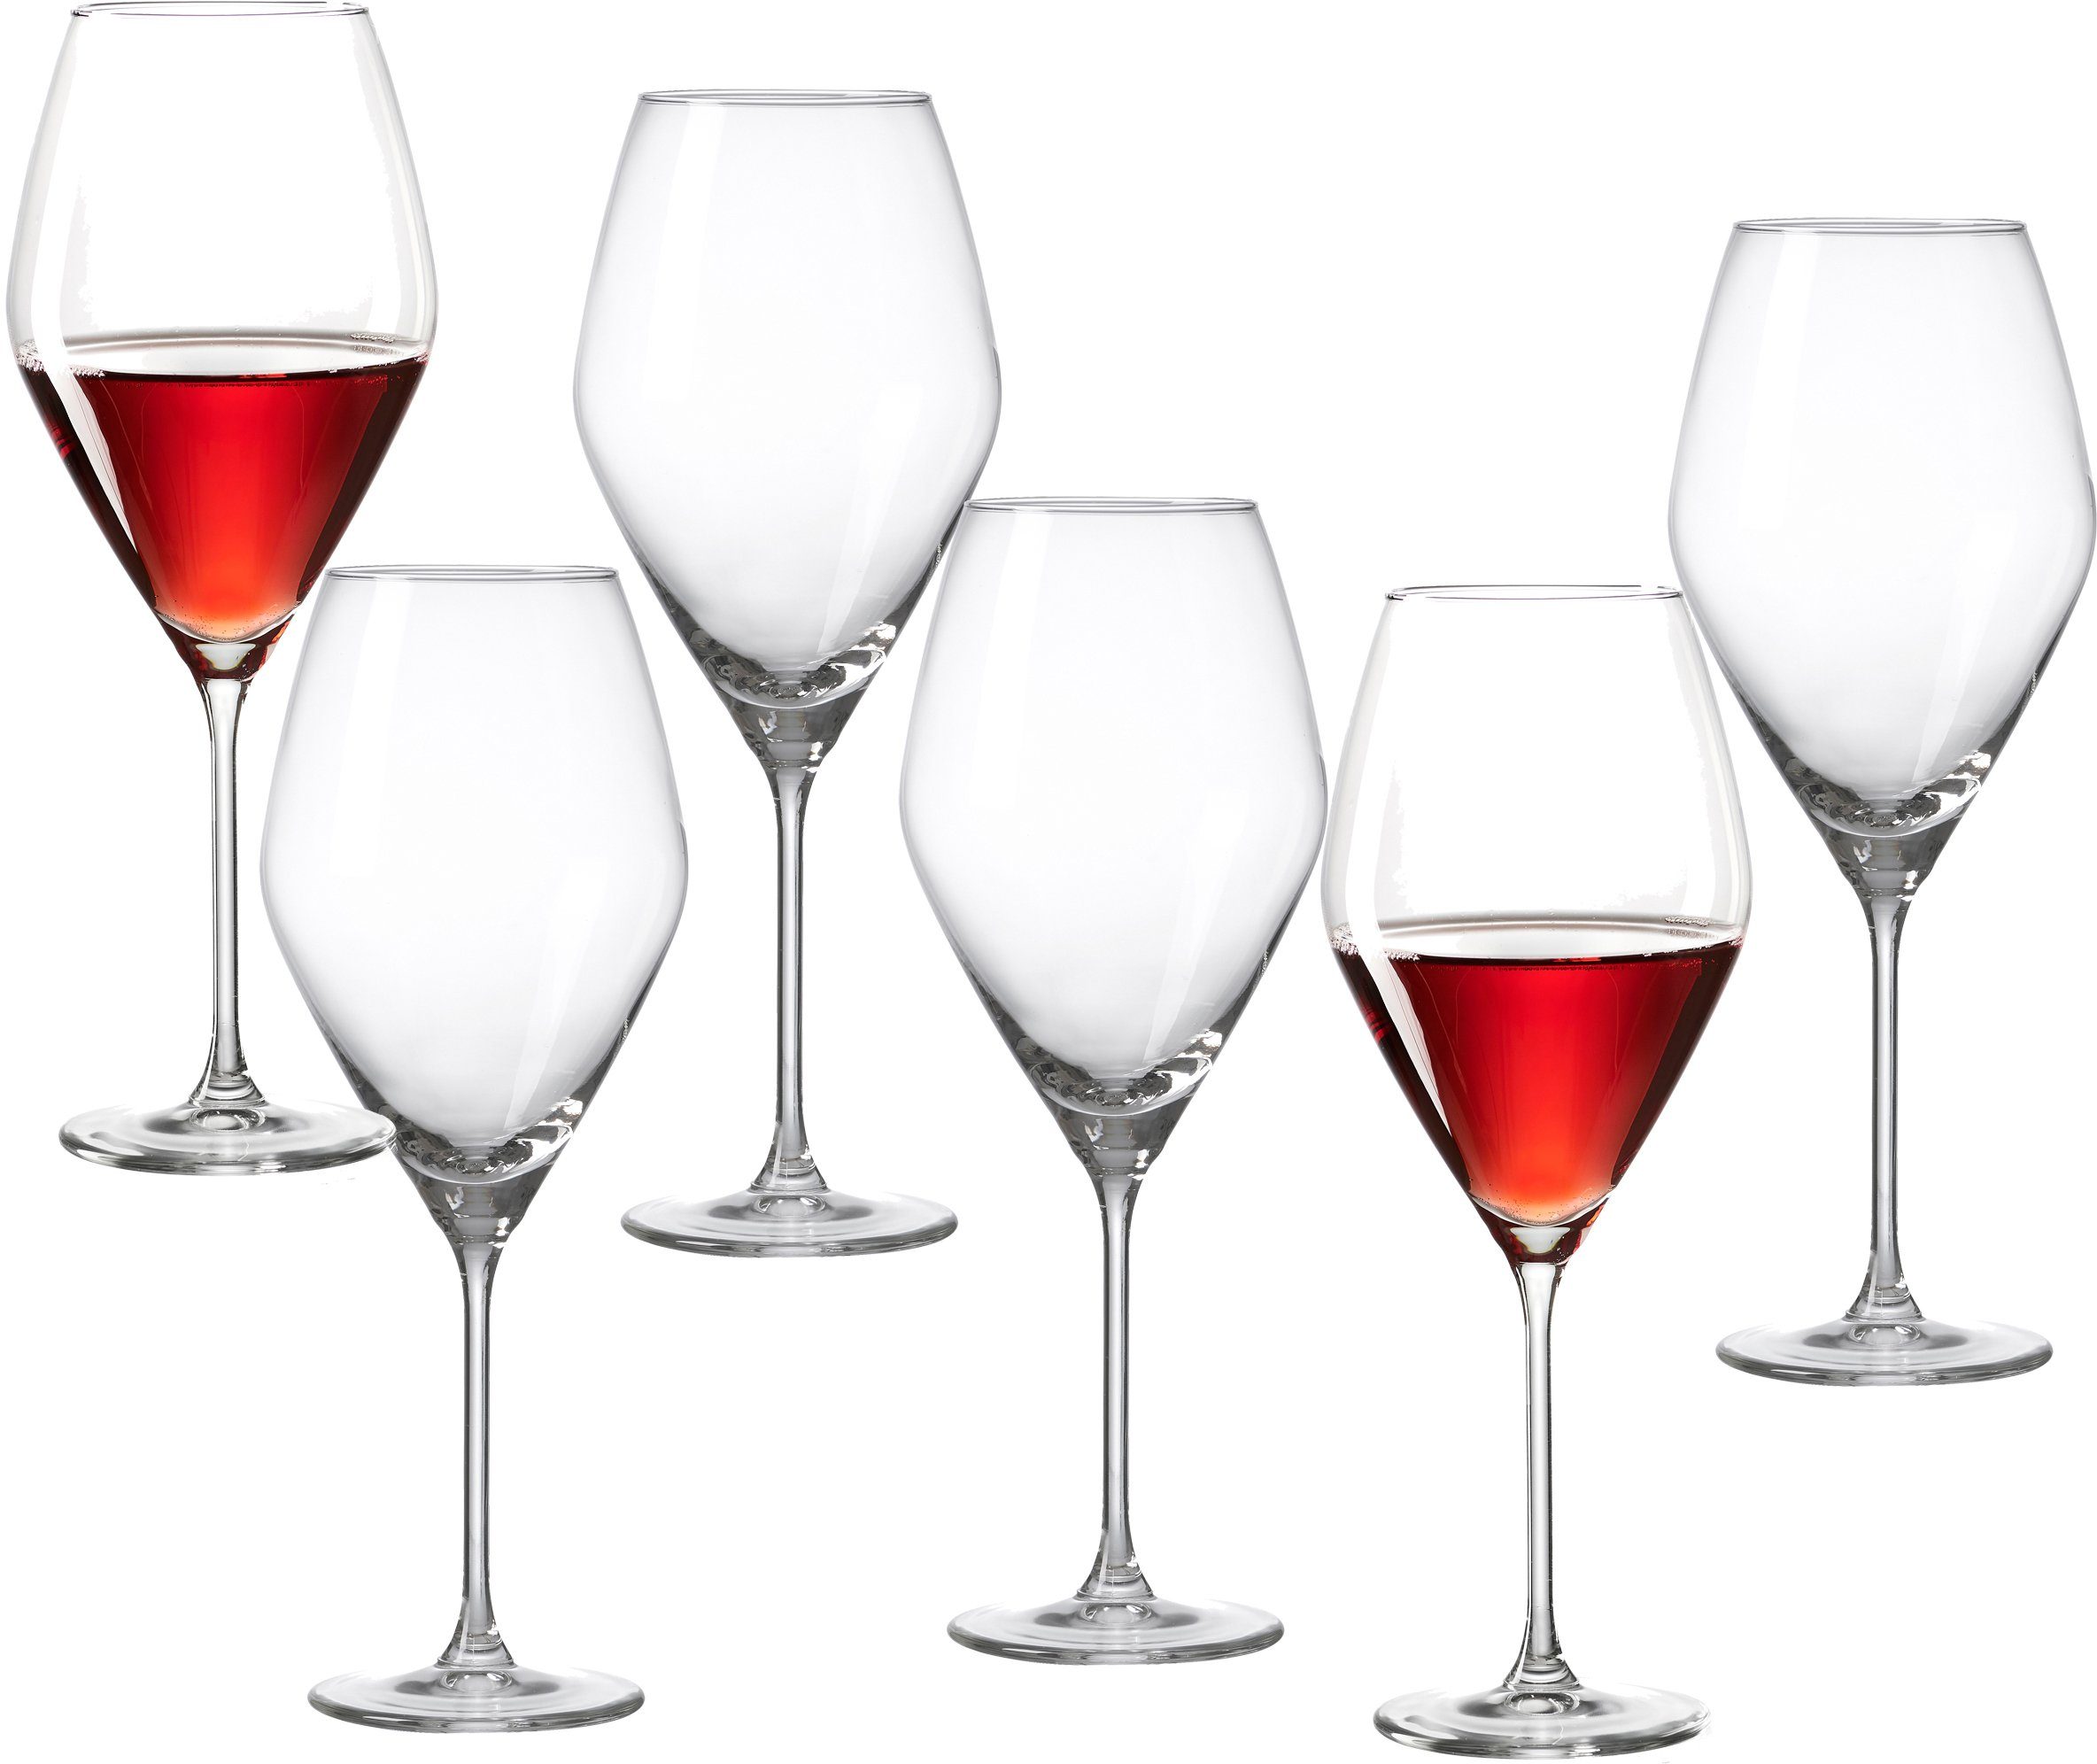 Ritzenhoff & Breker Rotweinglas Salsa, Glas, robust und kristallklar, 6-teilig